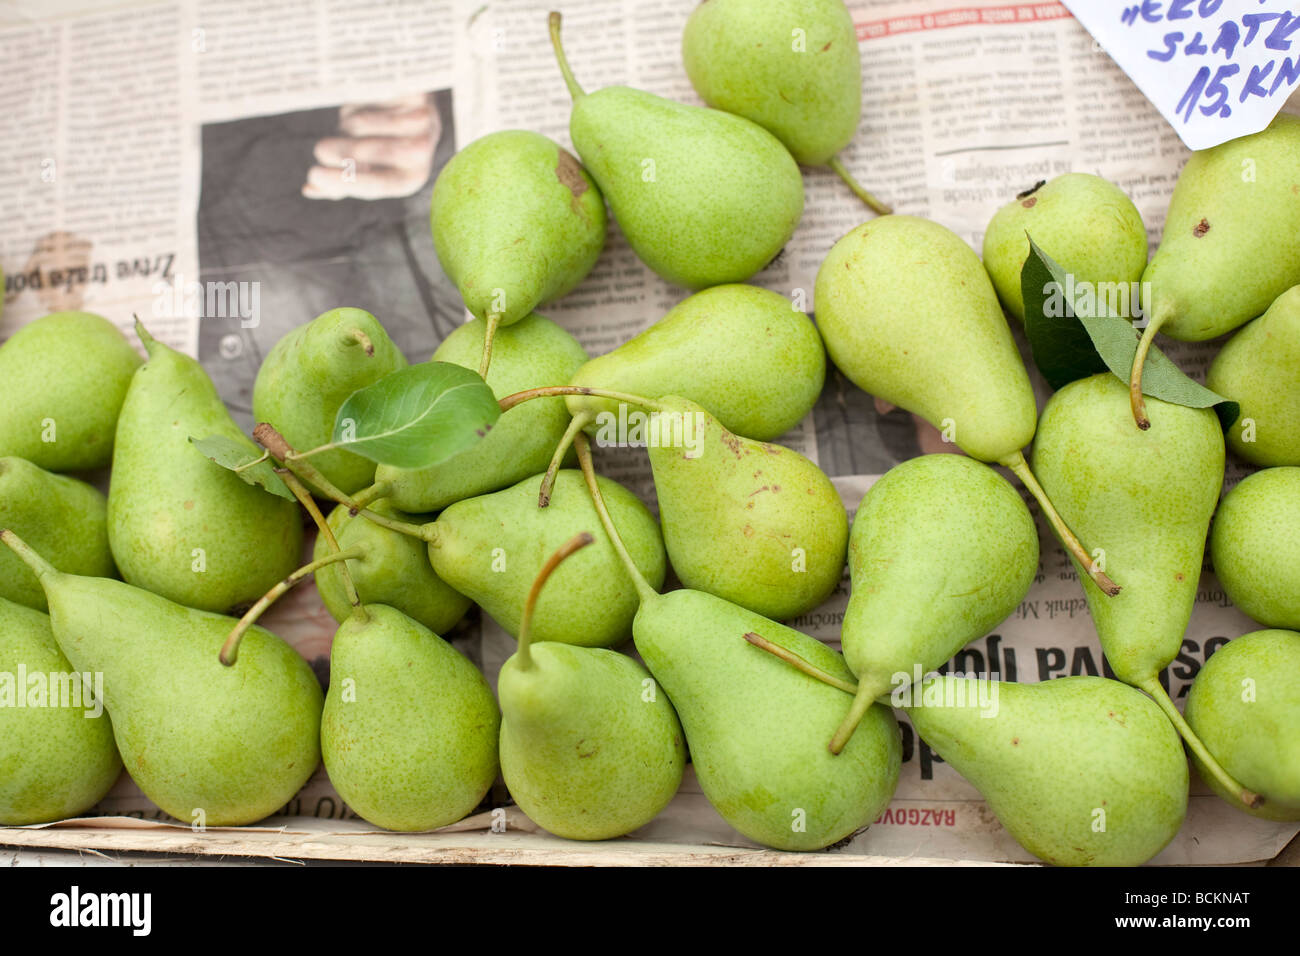 Les fruits cultivés naturellement vendus sur le marché de la poire jaune dans des caisses en bois Banque D'Images